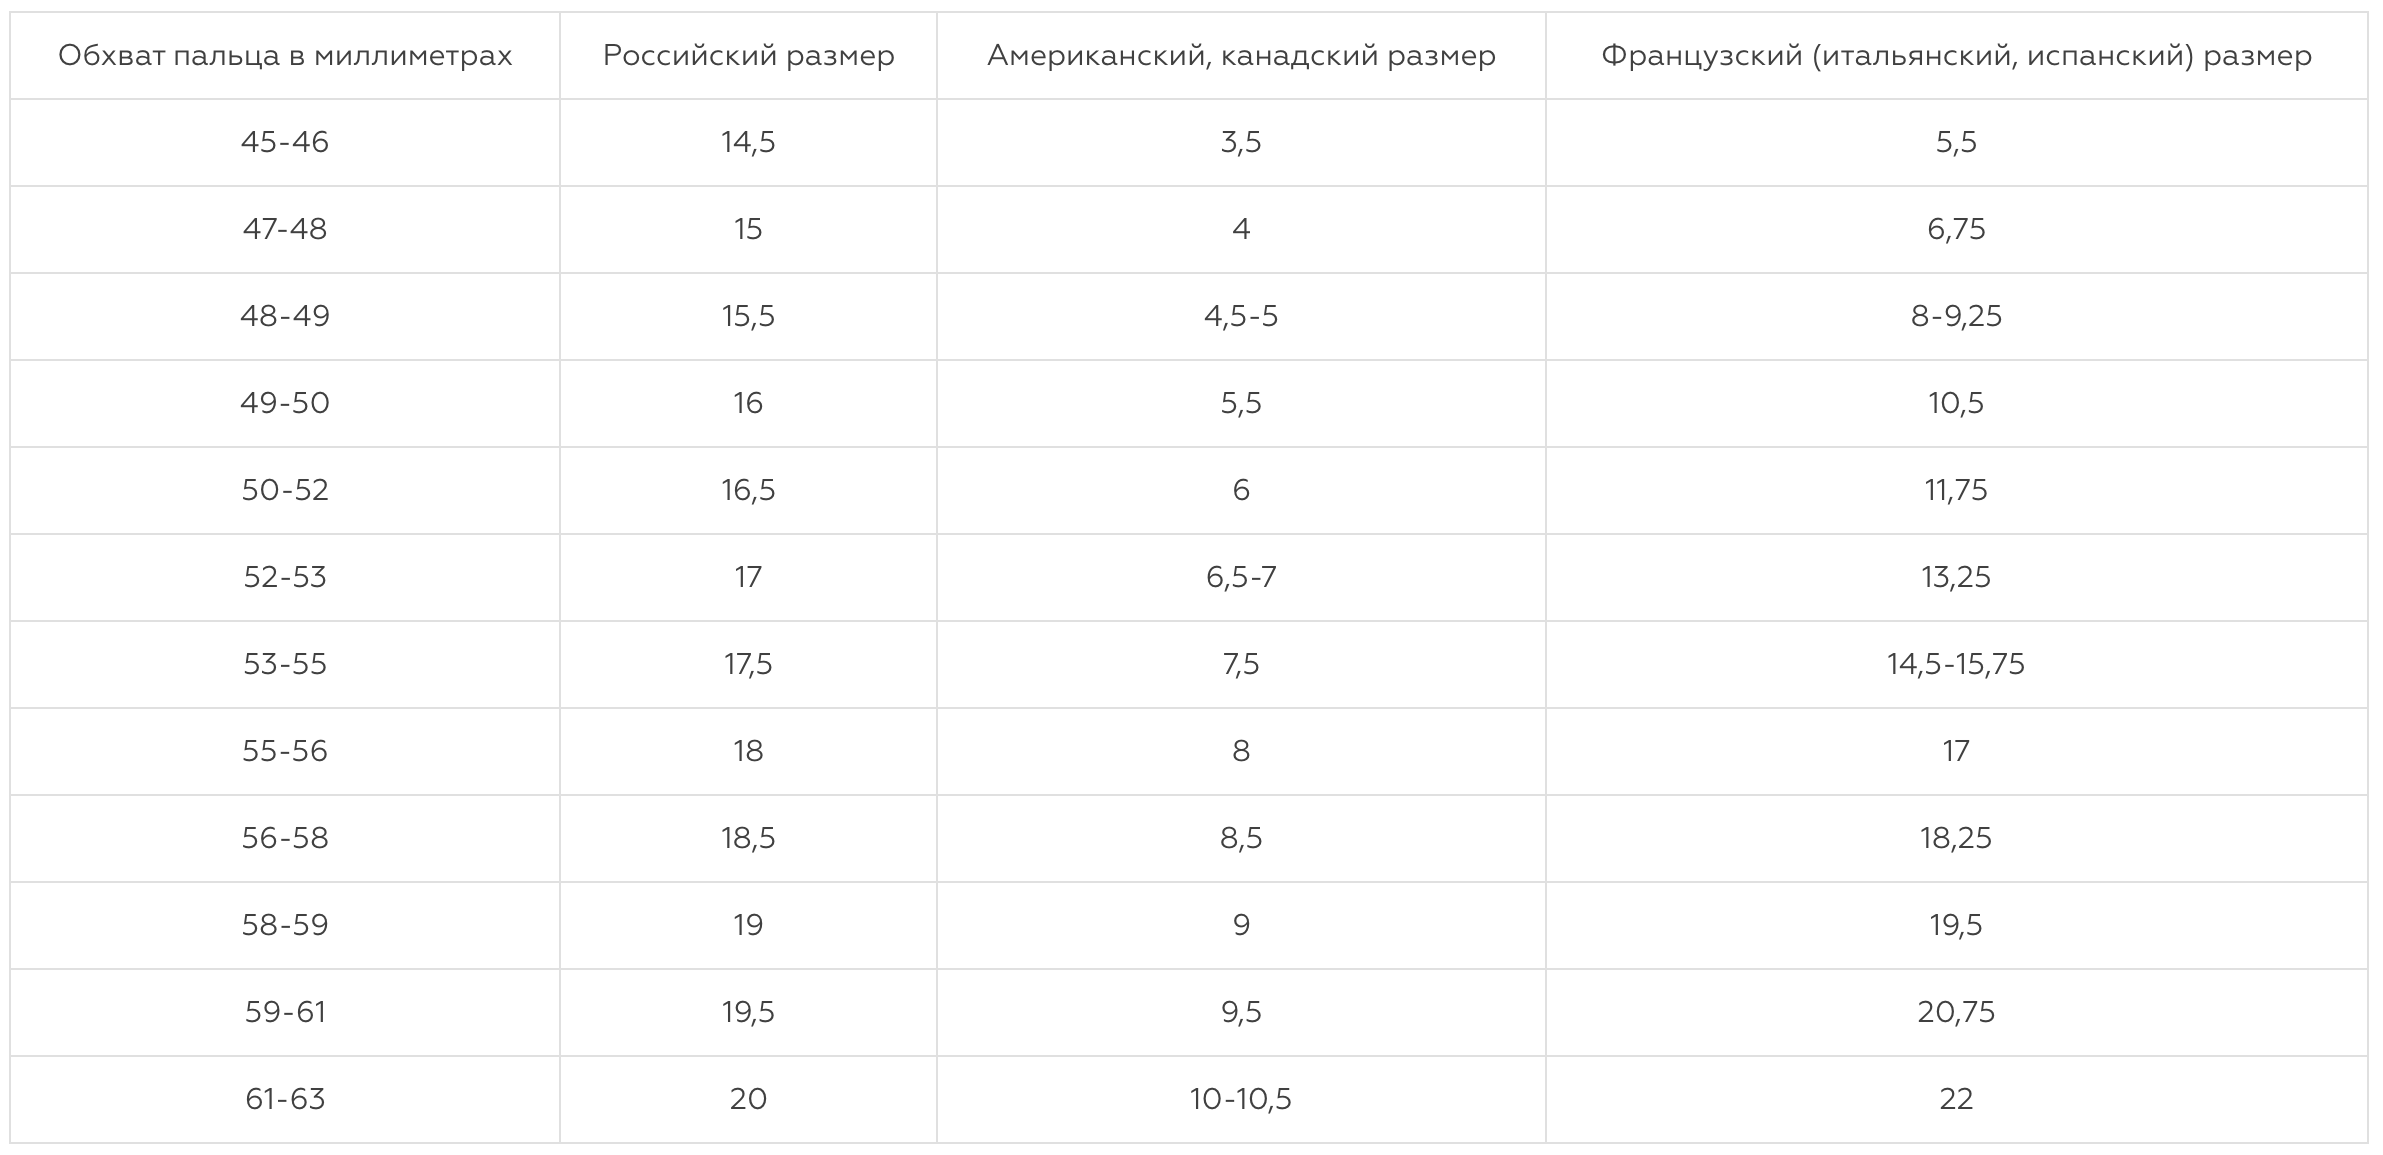 Самые популярные размеры колец у женщин и мужчин — Полезные материалы накорпоративном сайте «Русские Самоцветы»